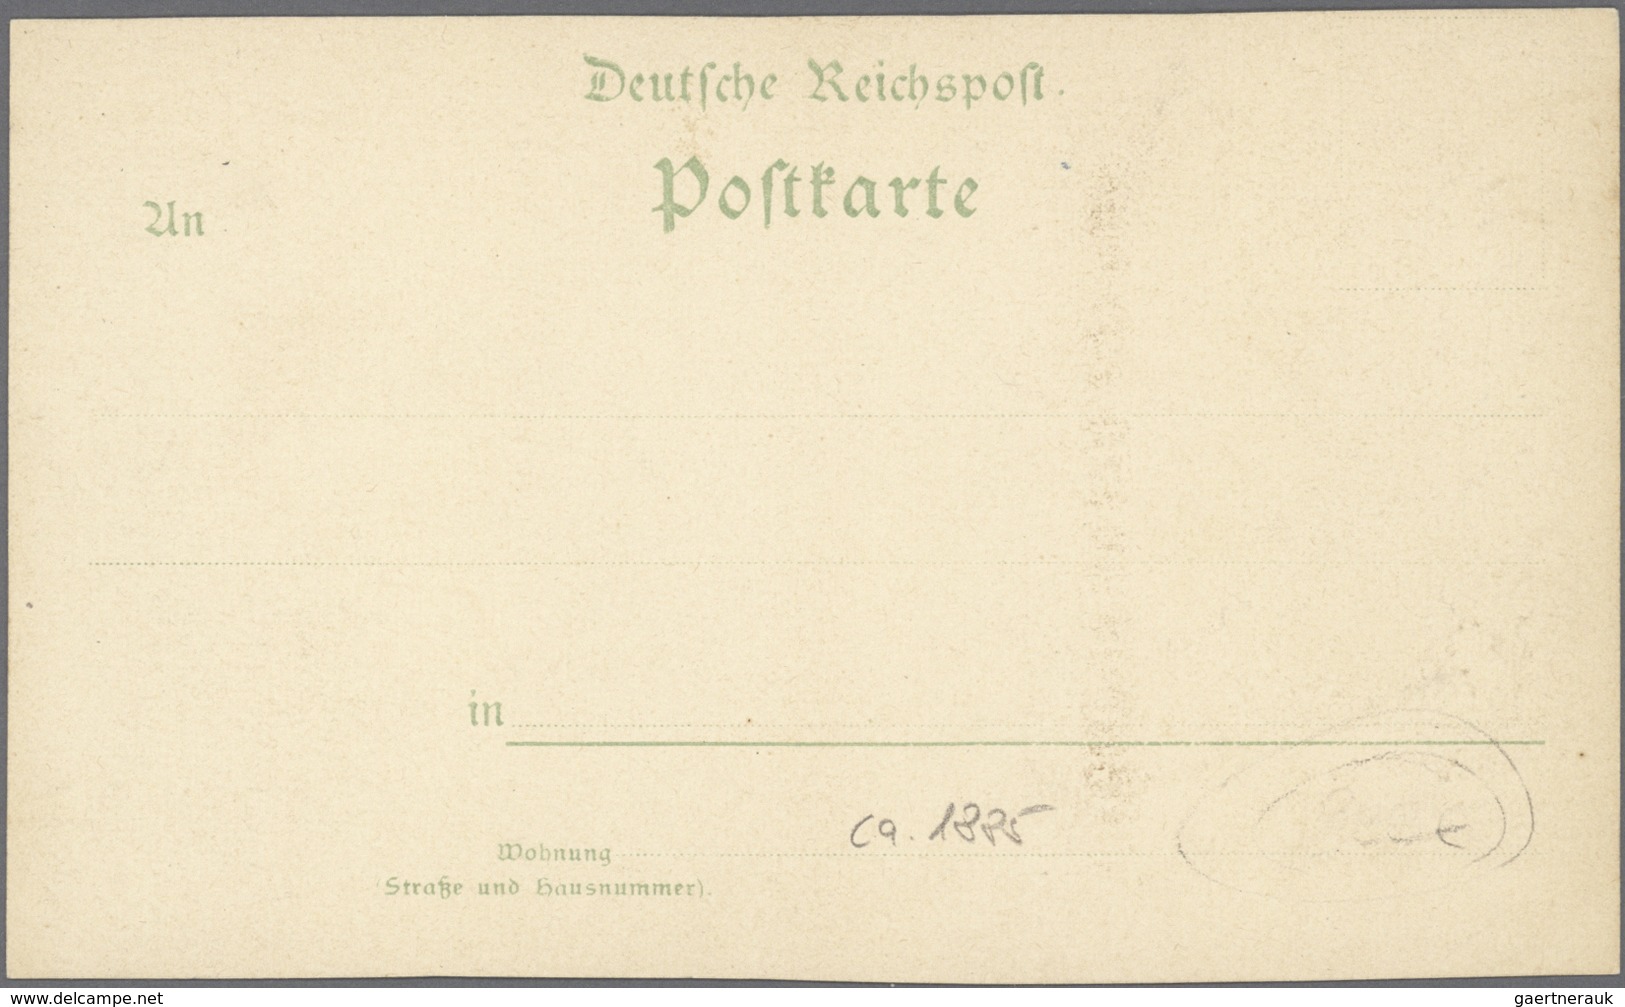 Ansichtskarten: Vorläufer: 1885 Ca., HAMBURG Alster-Arkaden, Ungebraucht Aber Beschrieben, Die Rände - Unclassified